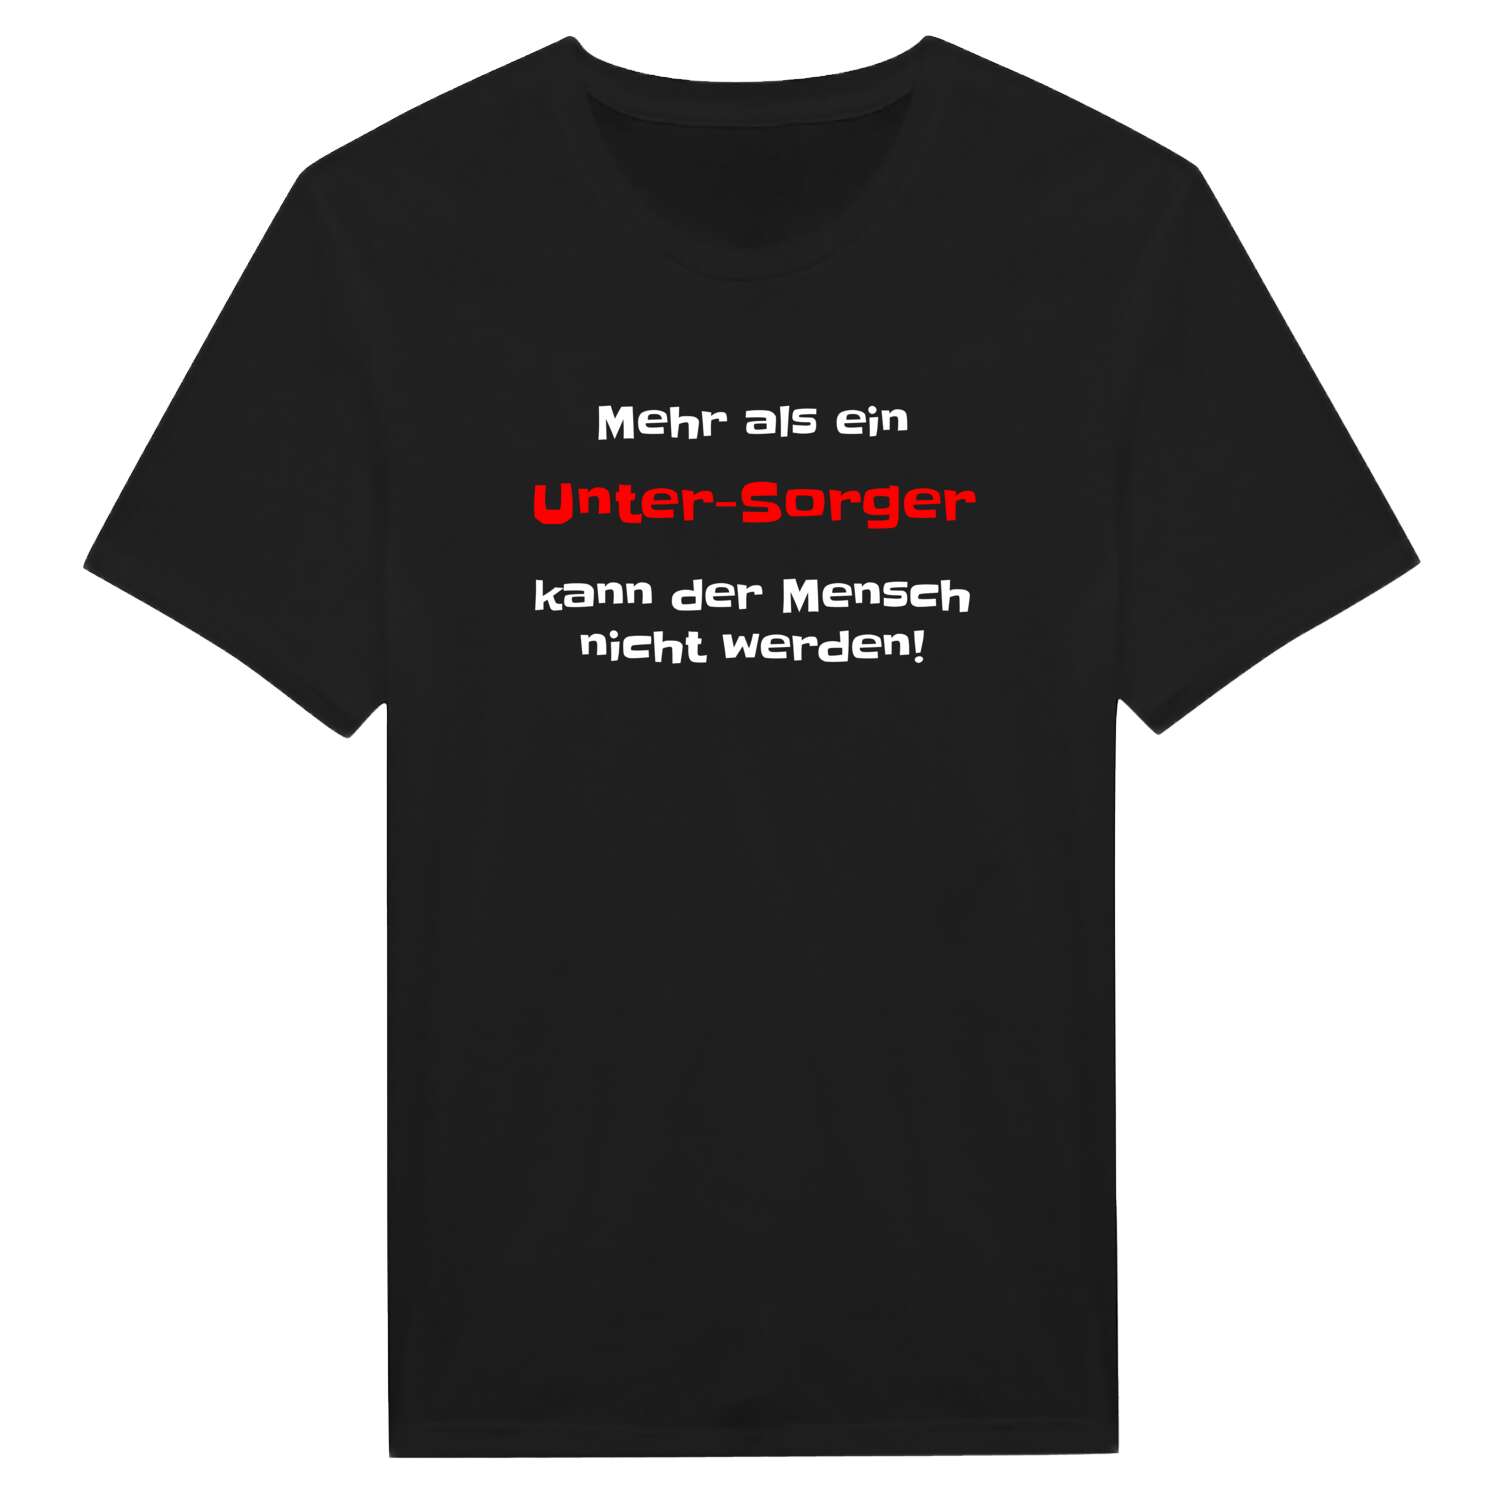 Unter-Sorg T-Shirt »Mehr als ein«